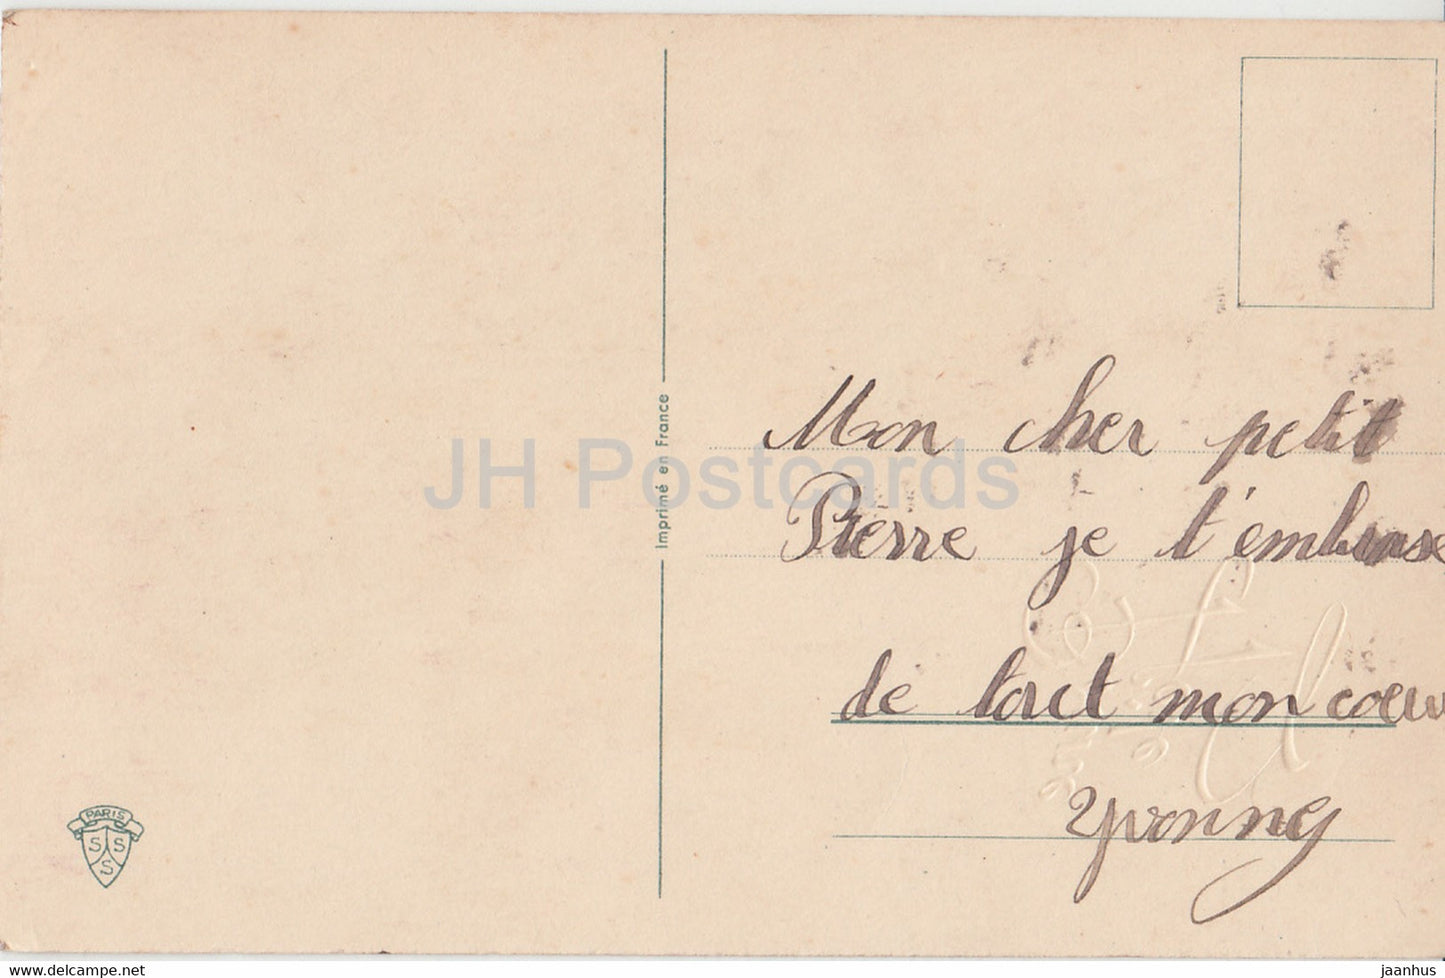 Geburtstagsgrußkarte - Bonne Fete - Blumen - Stiefmütterchen - Hufeisen - Illustration - alte Postkarte - Frankreich - gebraucht